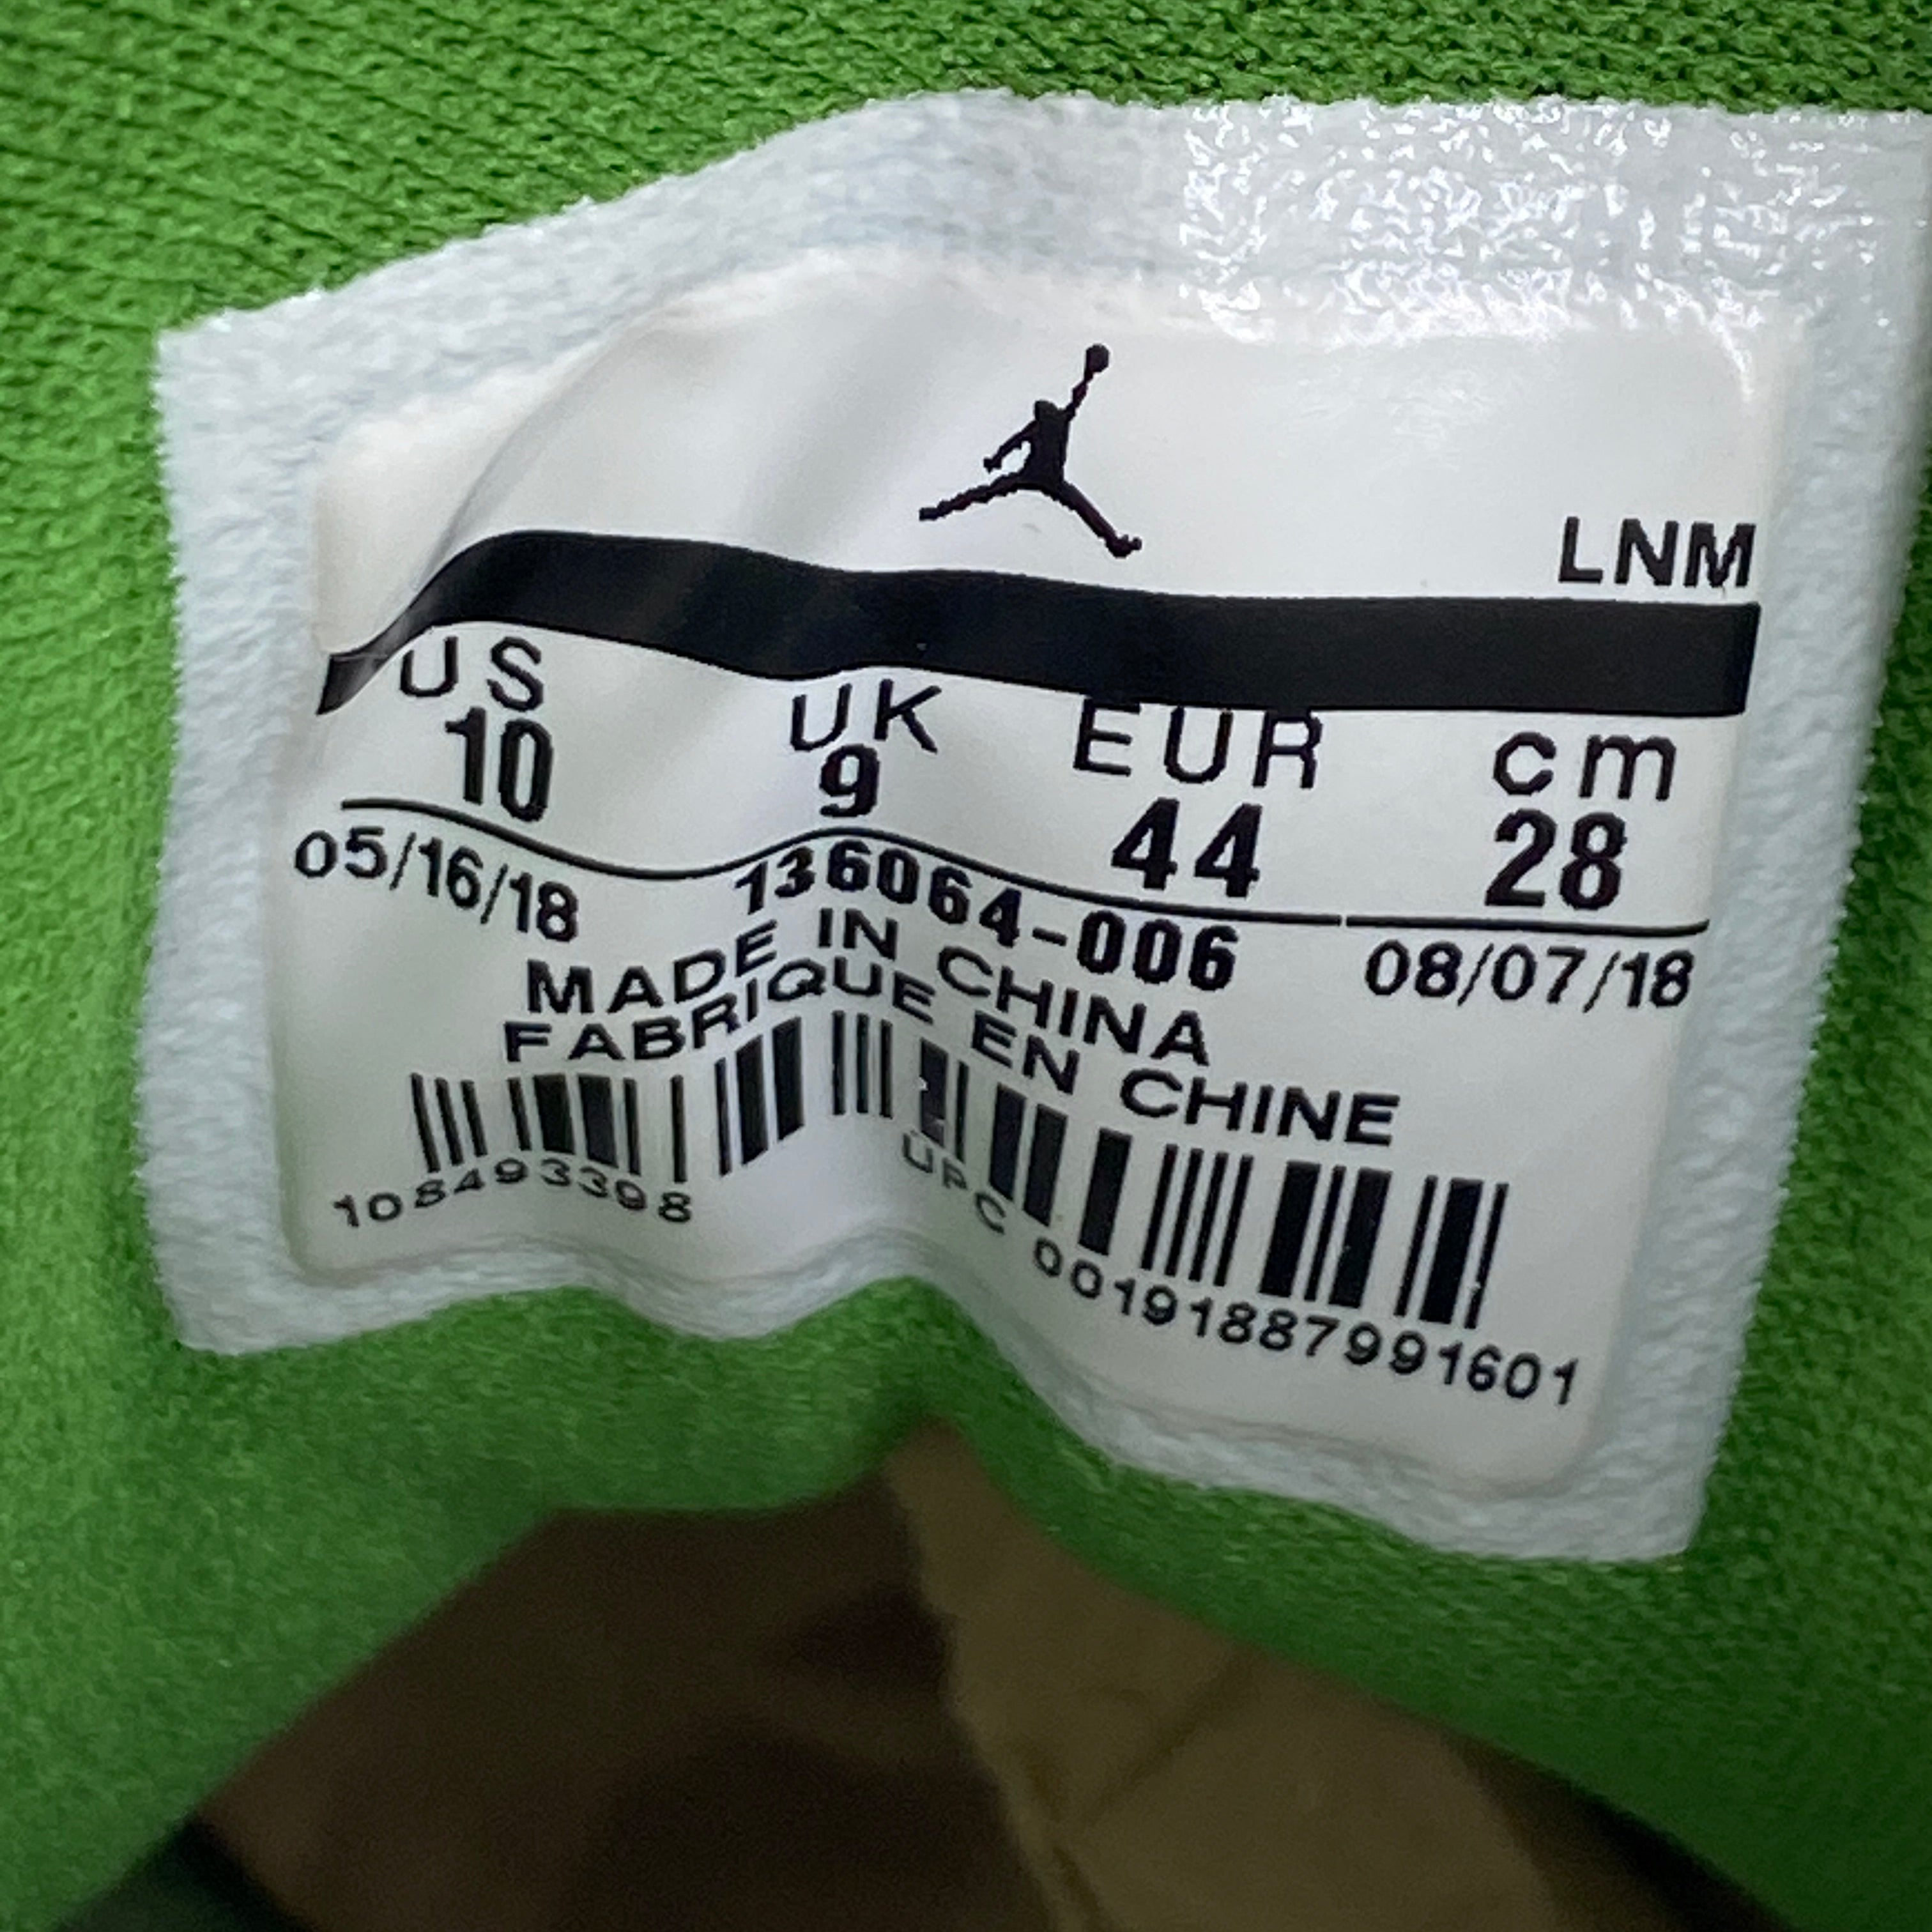 Air Jordan 3 Retro &quot;Clorophyll&quot; 2018 Used Size 10